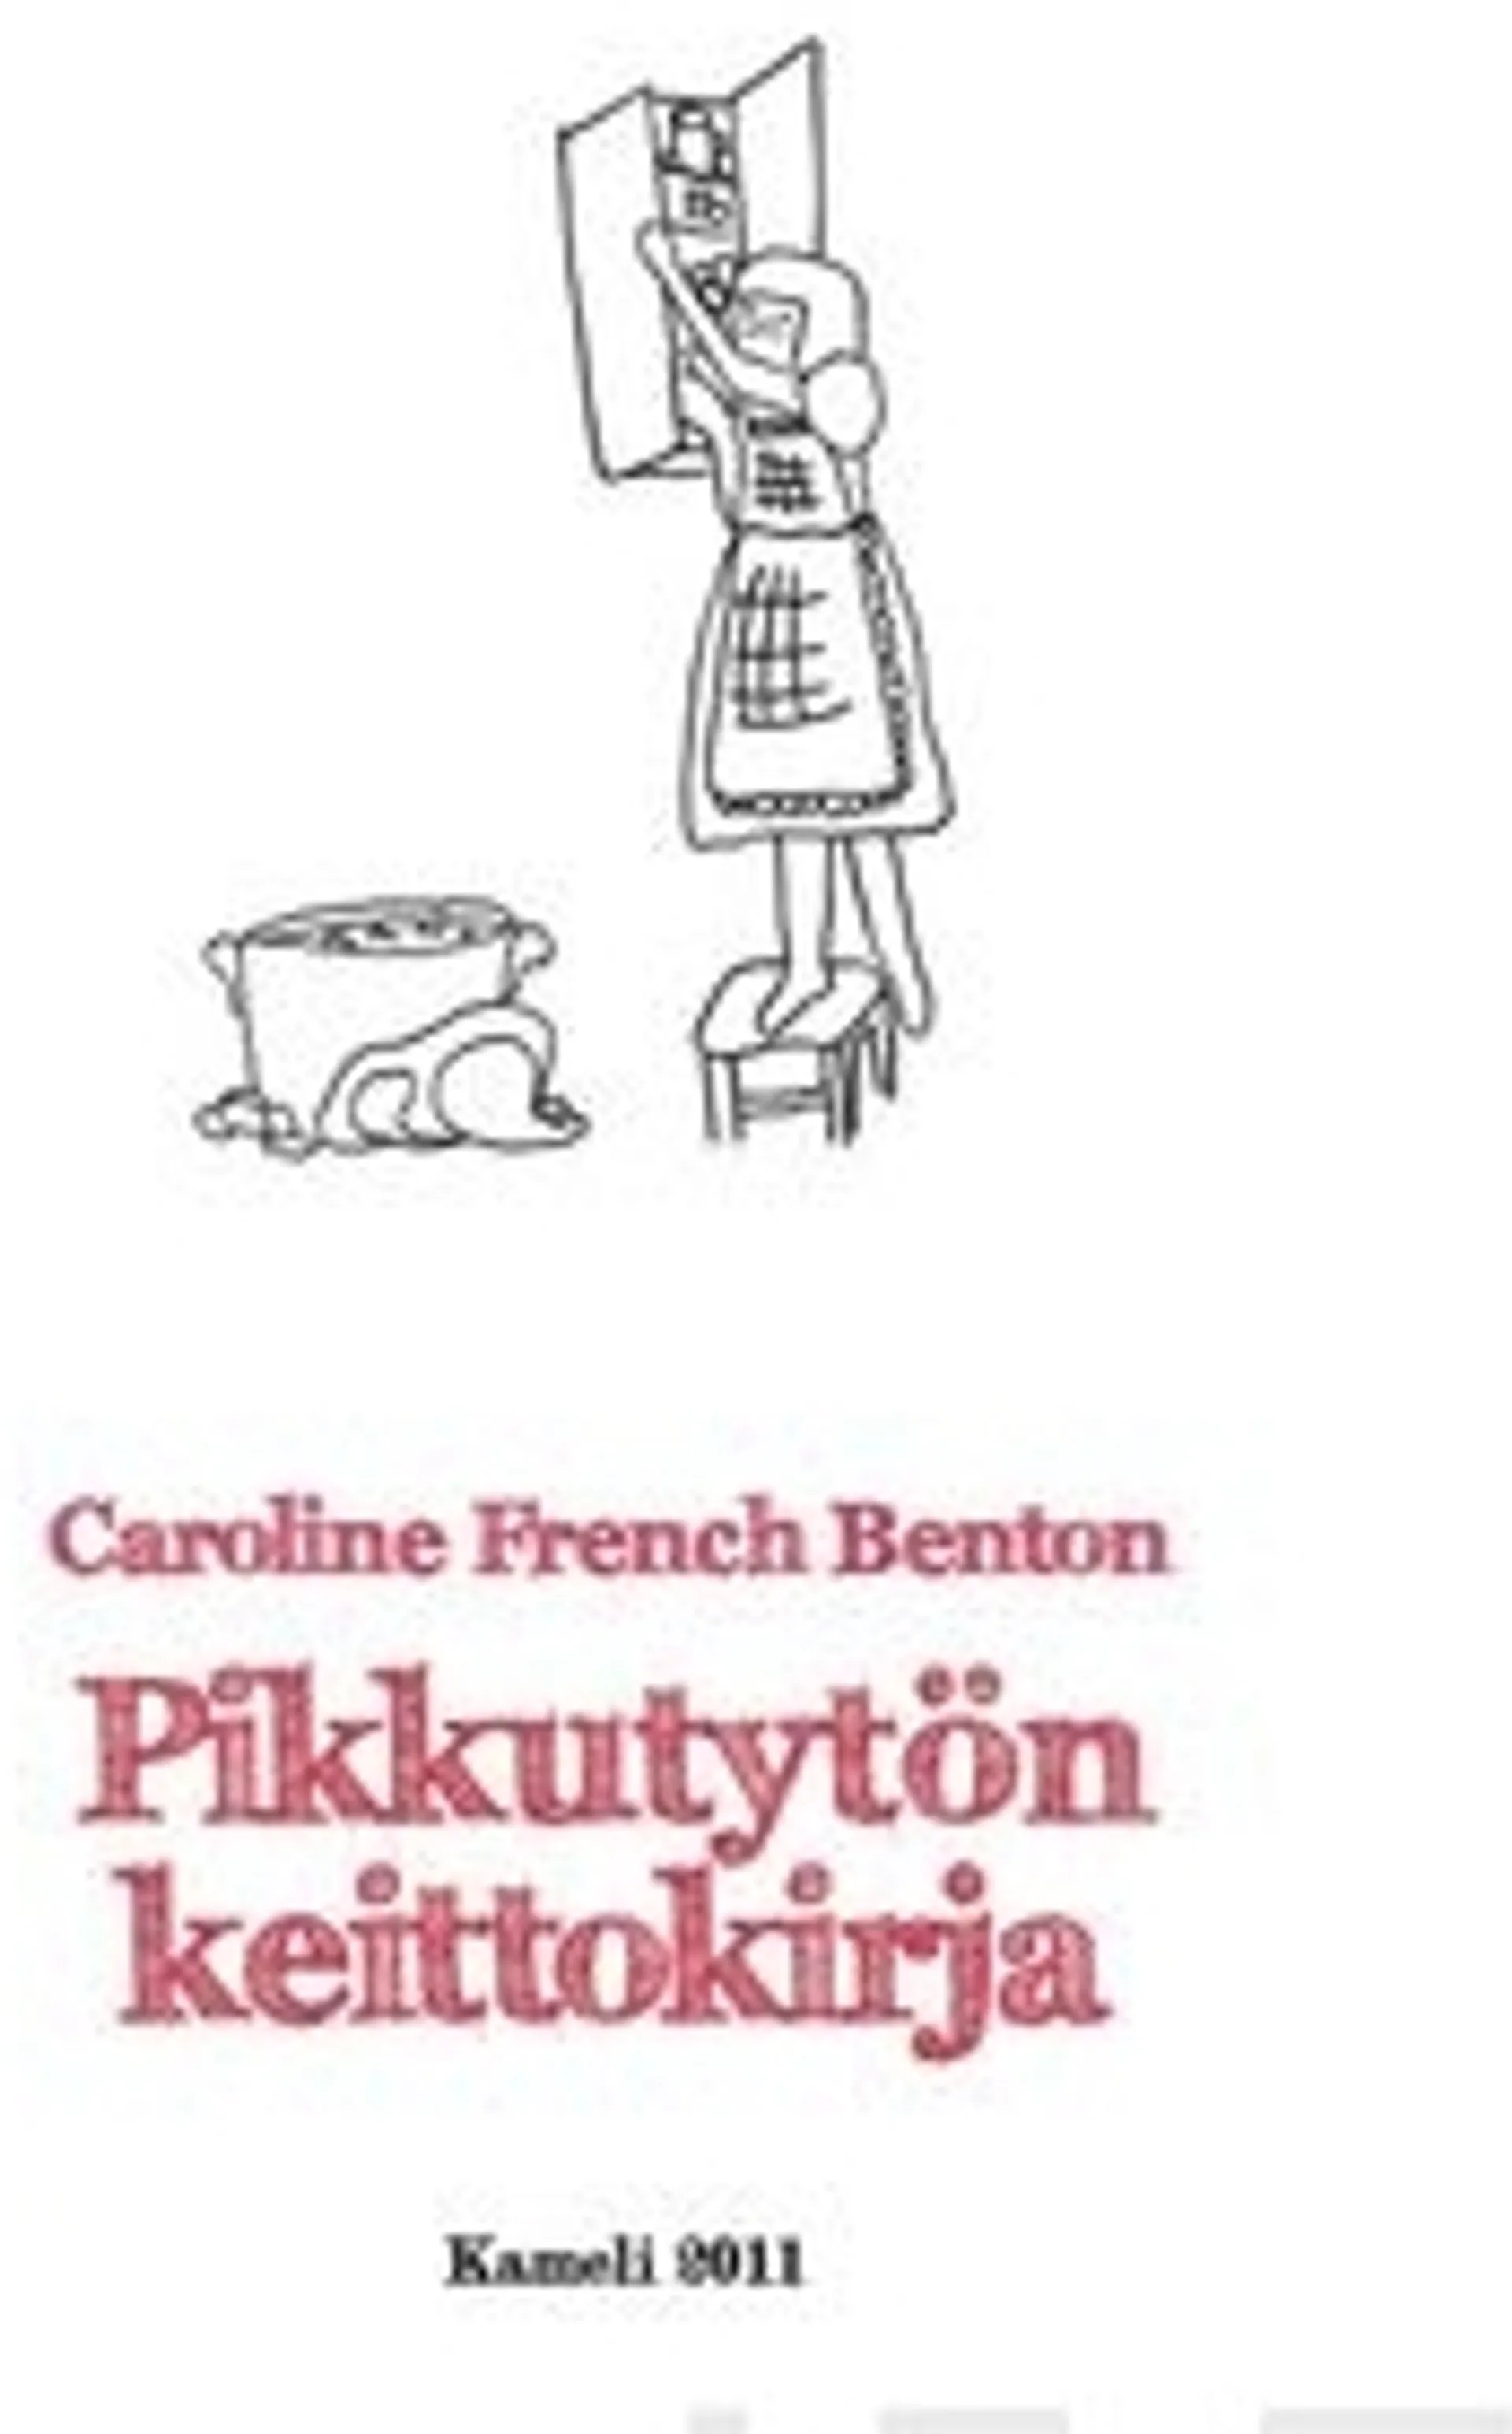 French Benton, Pikkutytön keittokirja